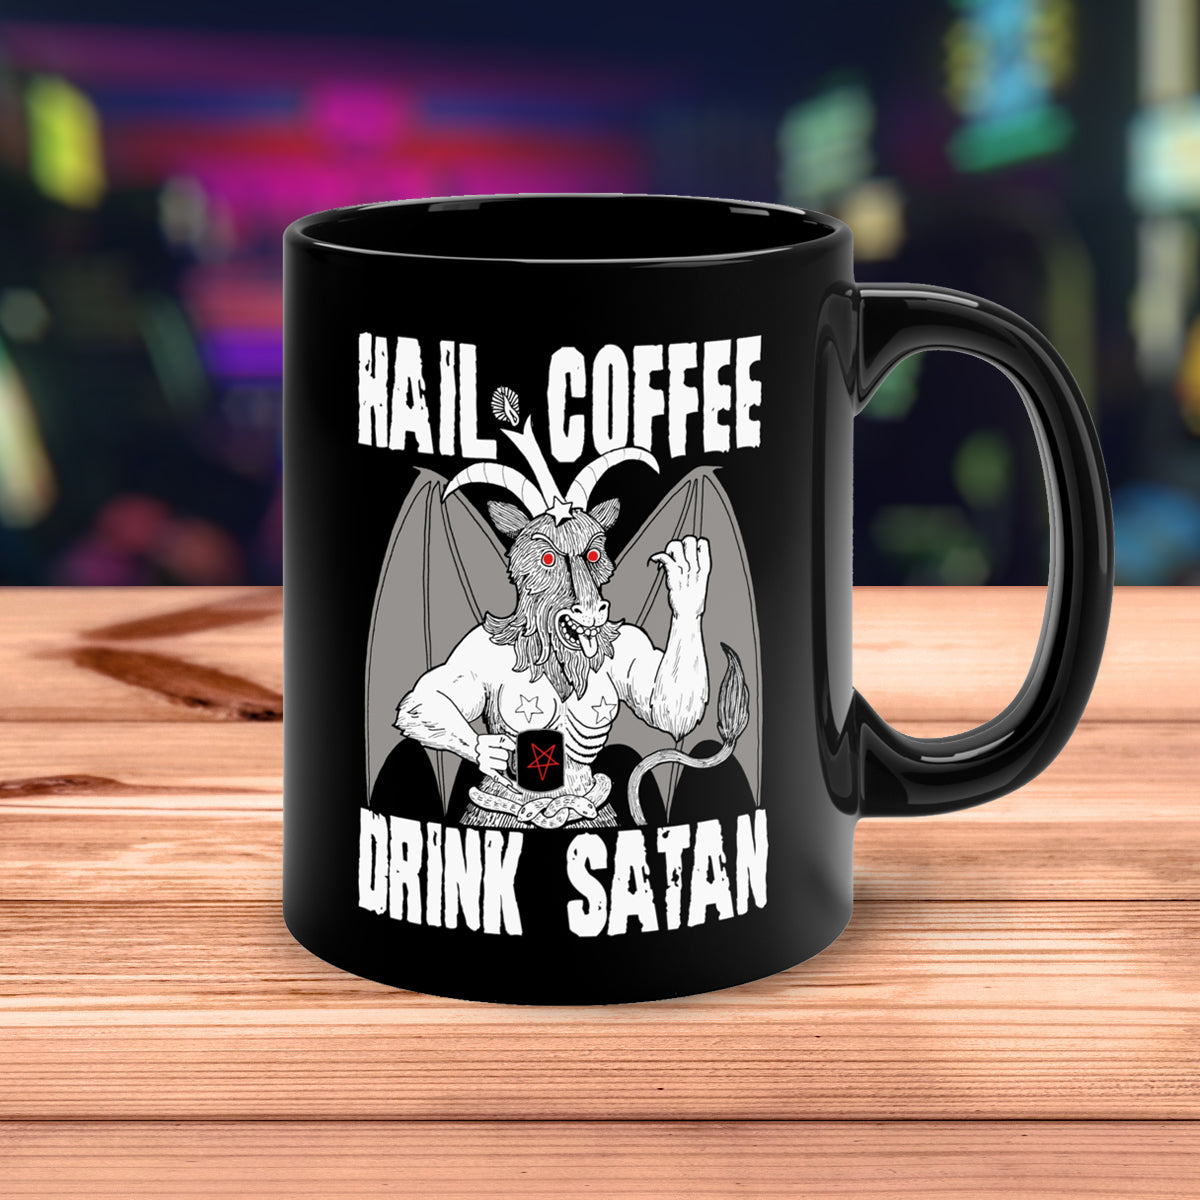 Hail Coffee, Drink Satan Mug